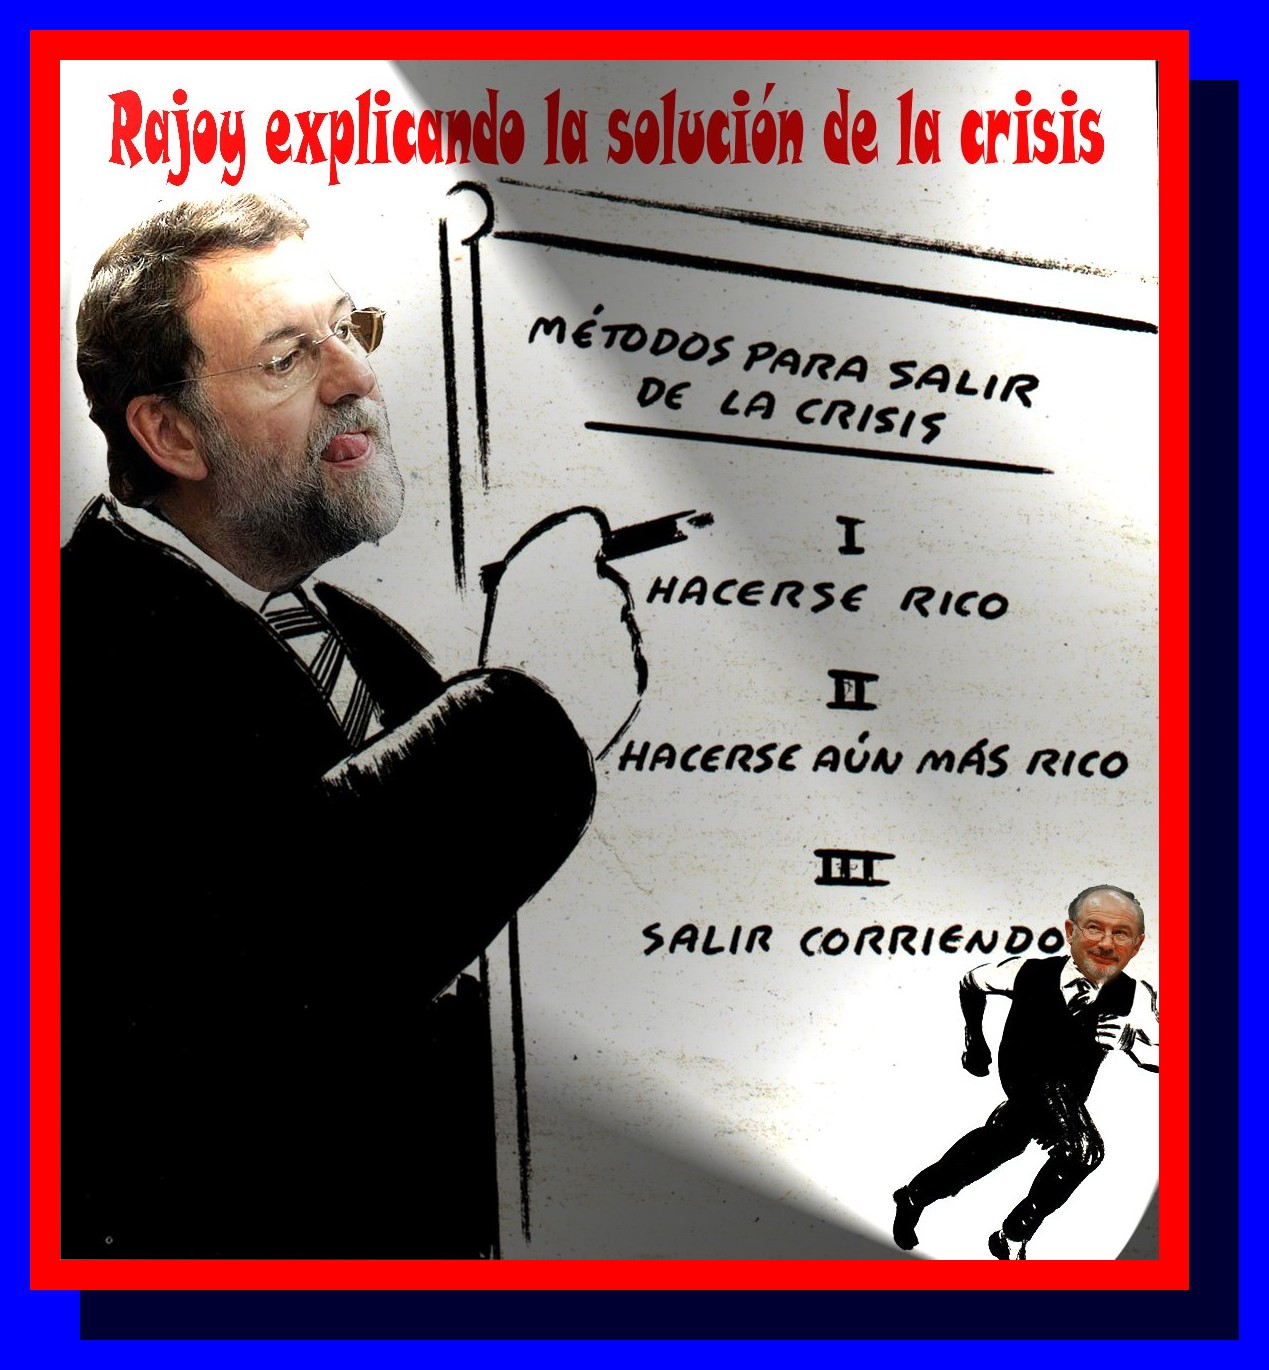 Mariano explicando la solucion a la crisis